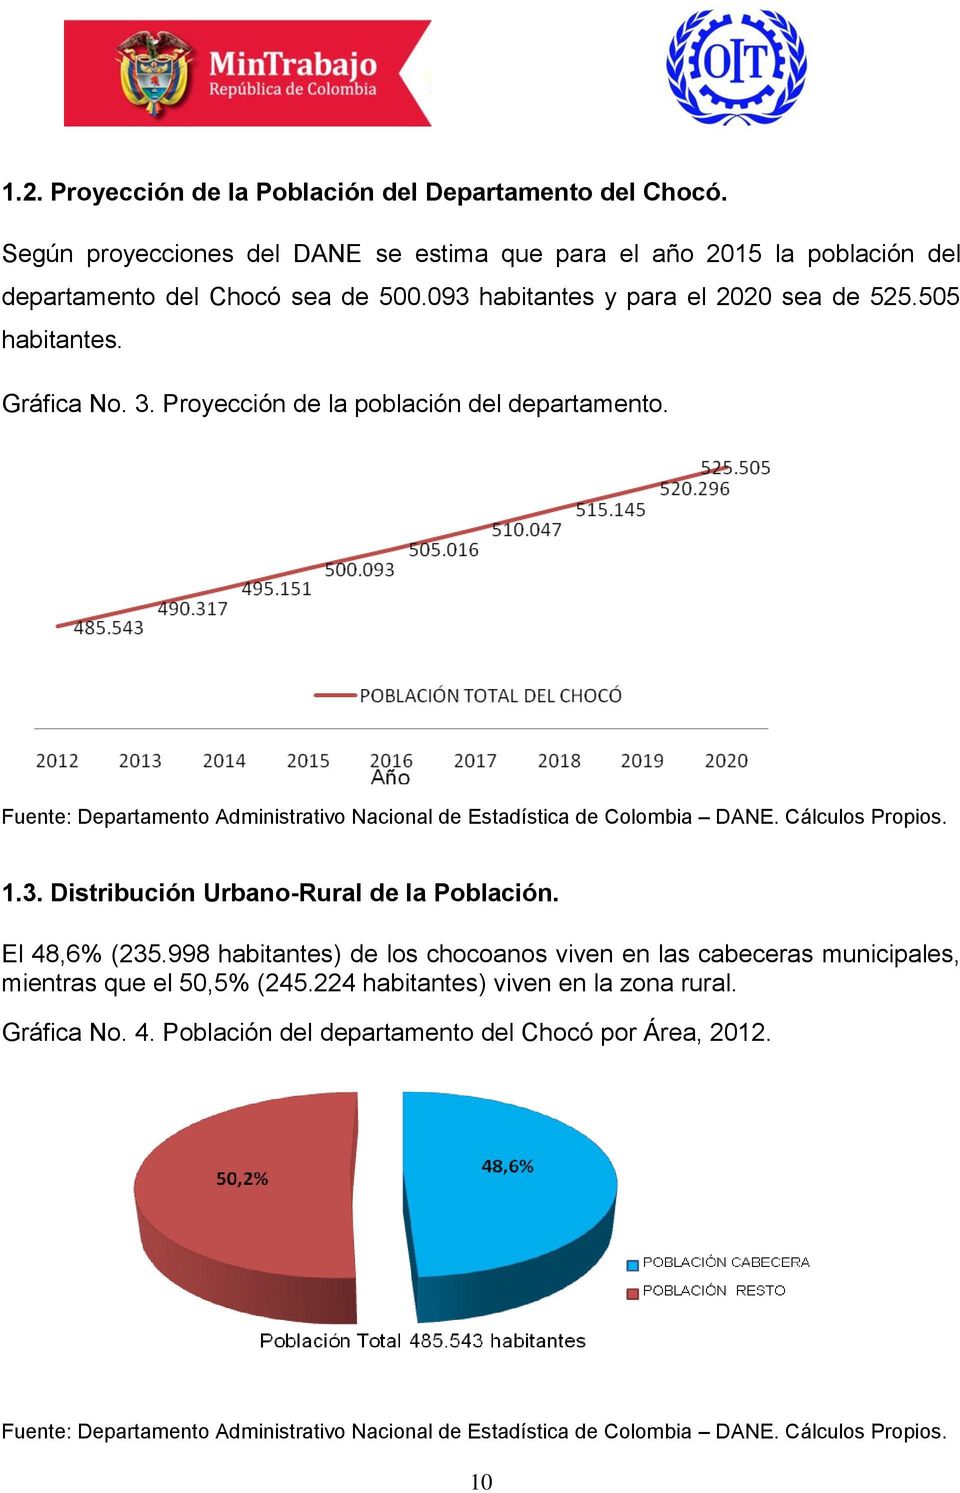 Fuente: Departamento Administrativo Nacional de Estadística de Colombia DANE. Cálculos Propios. 1.3. Distribución Urbano-Rural de la Población. El 48,6% (235.